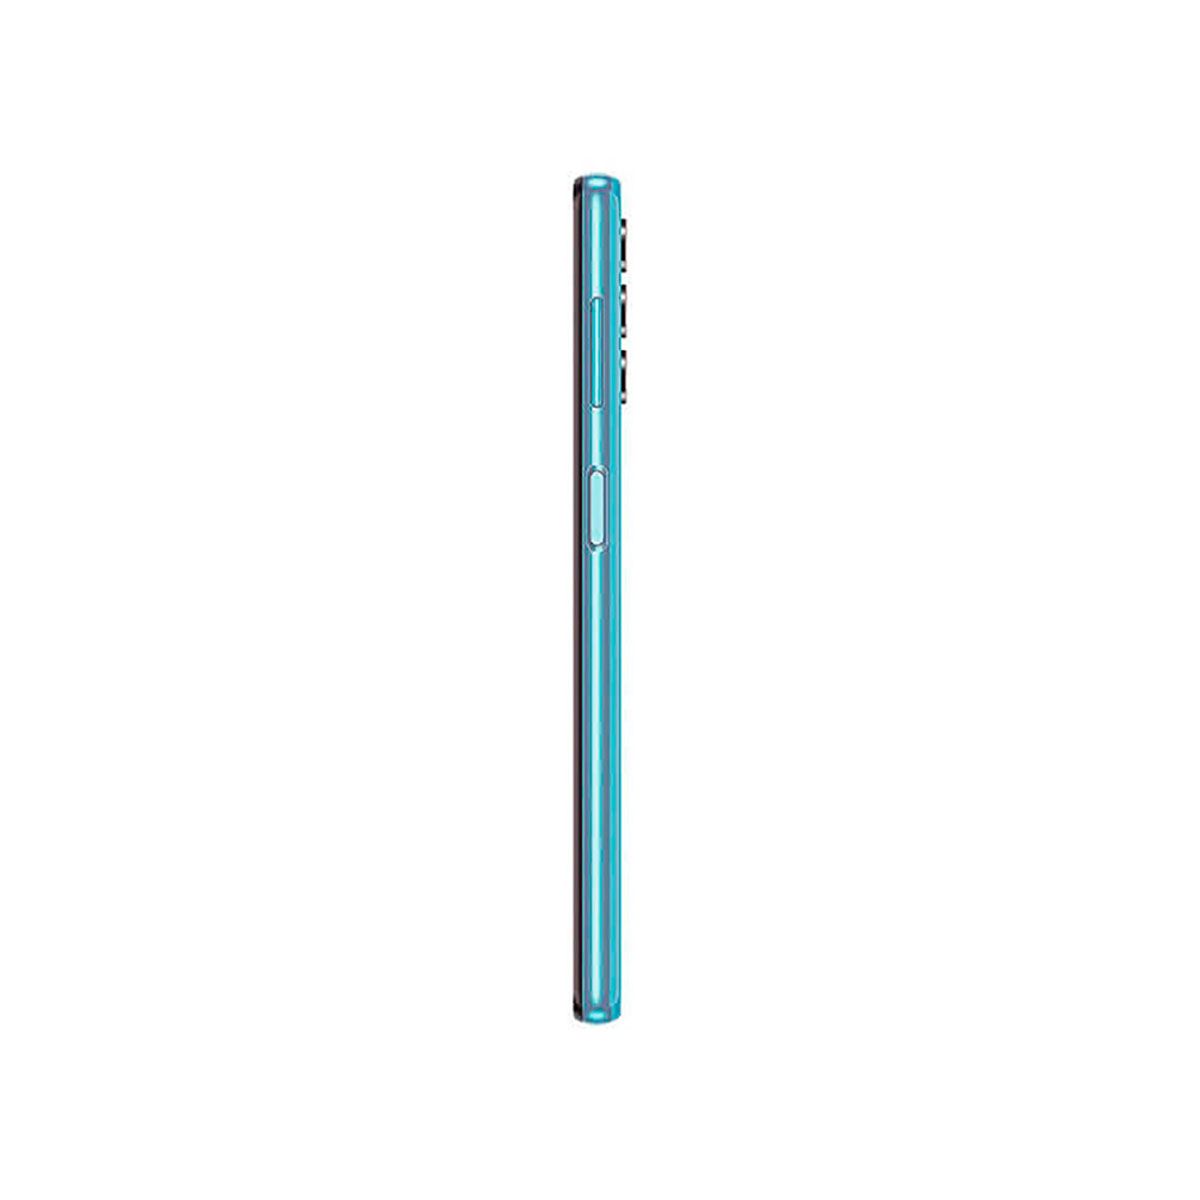 128 SIM 5G GB SAMSUNG Blau Dual A32